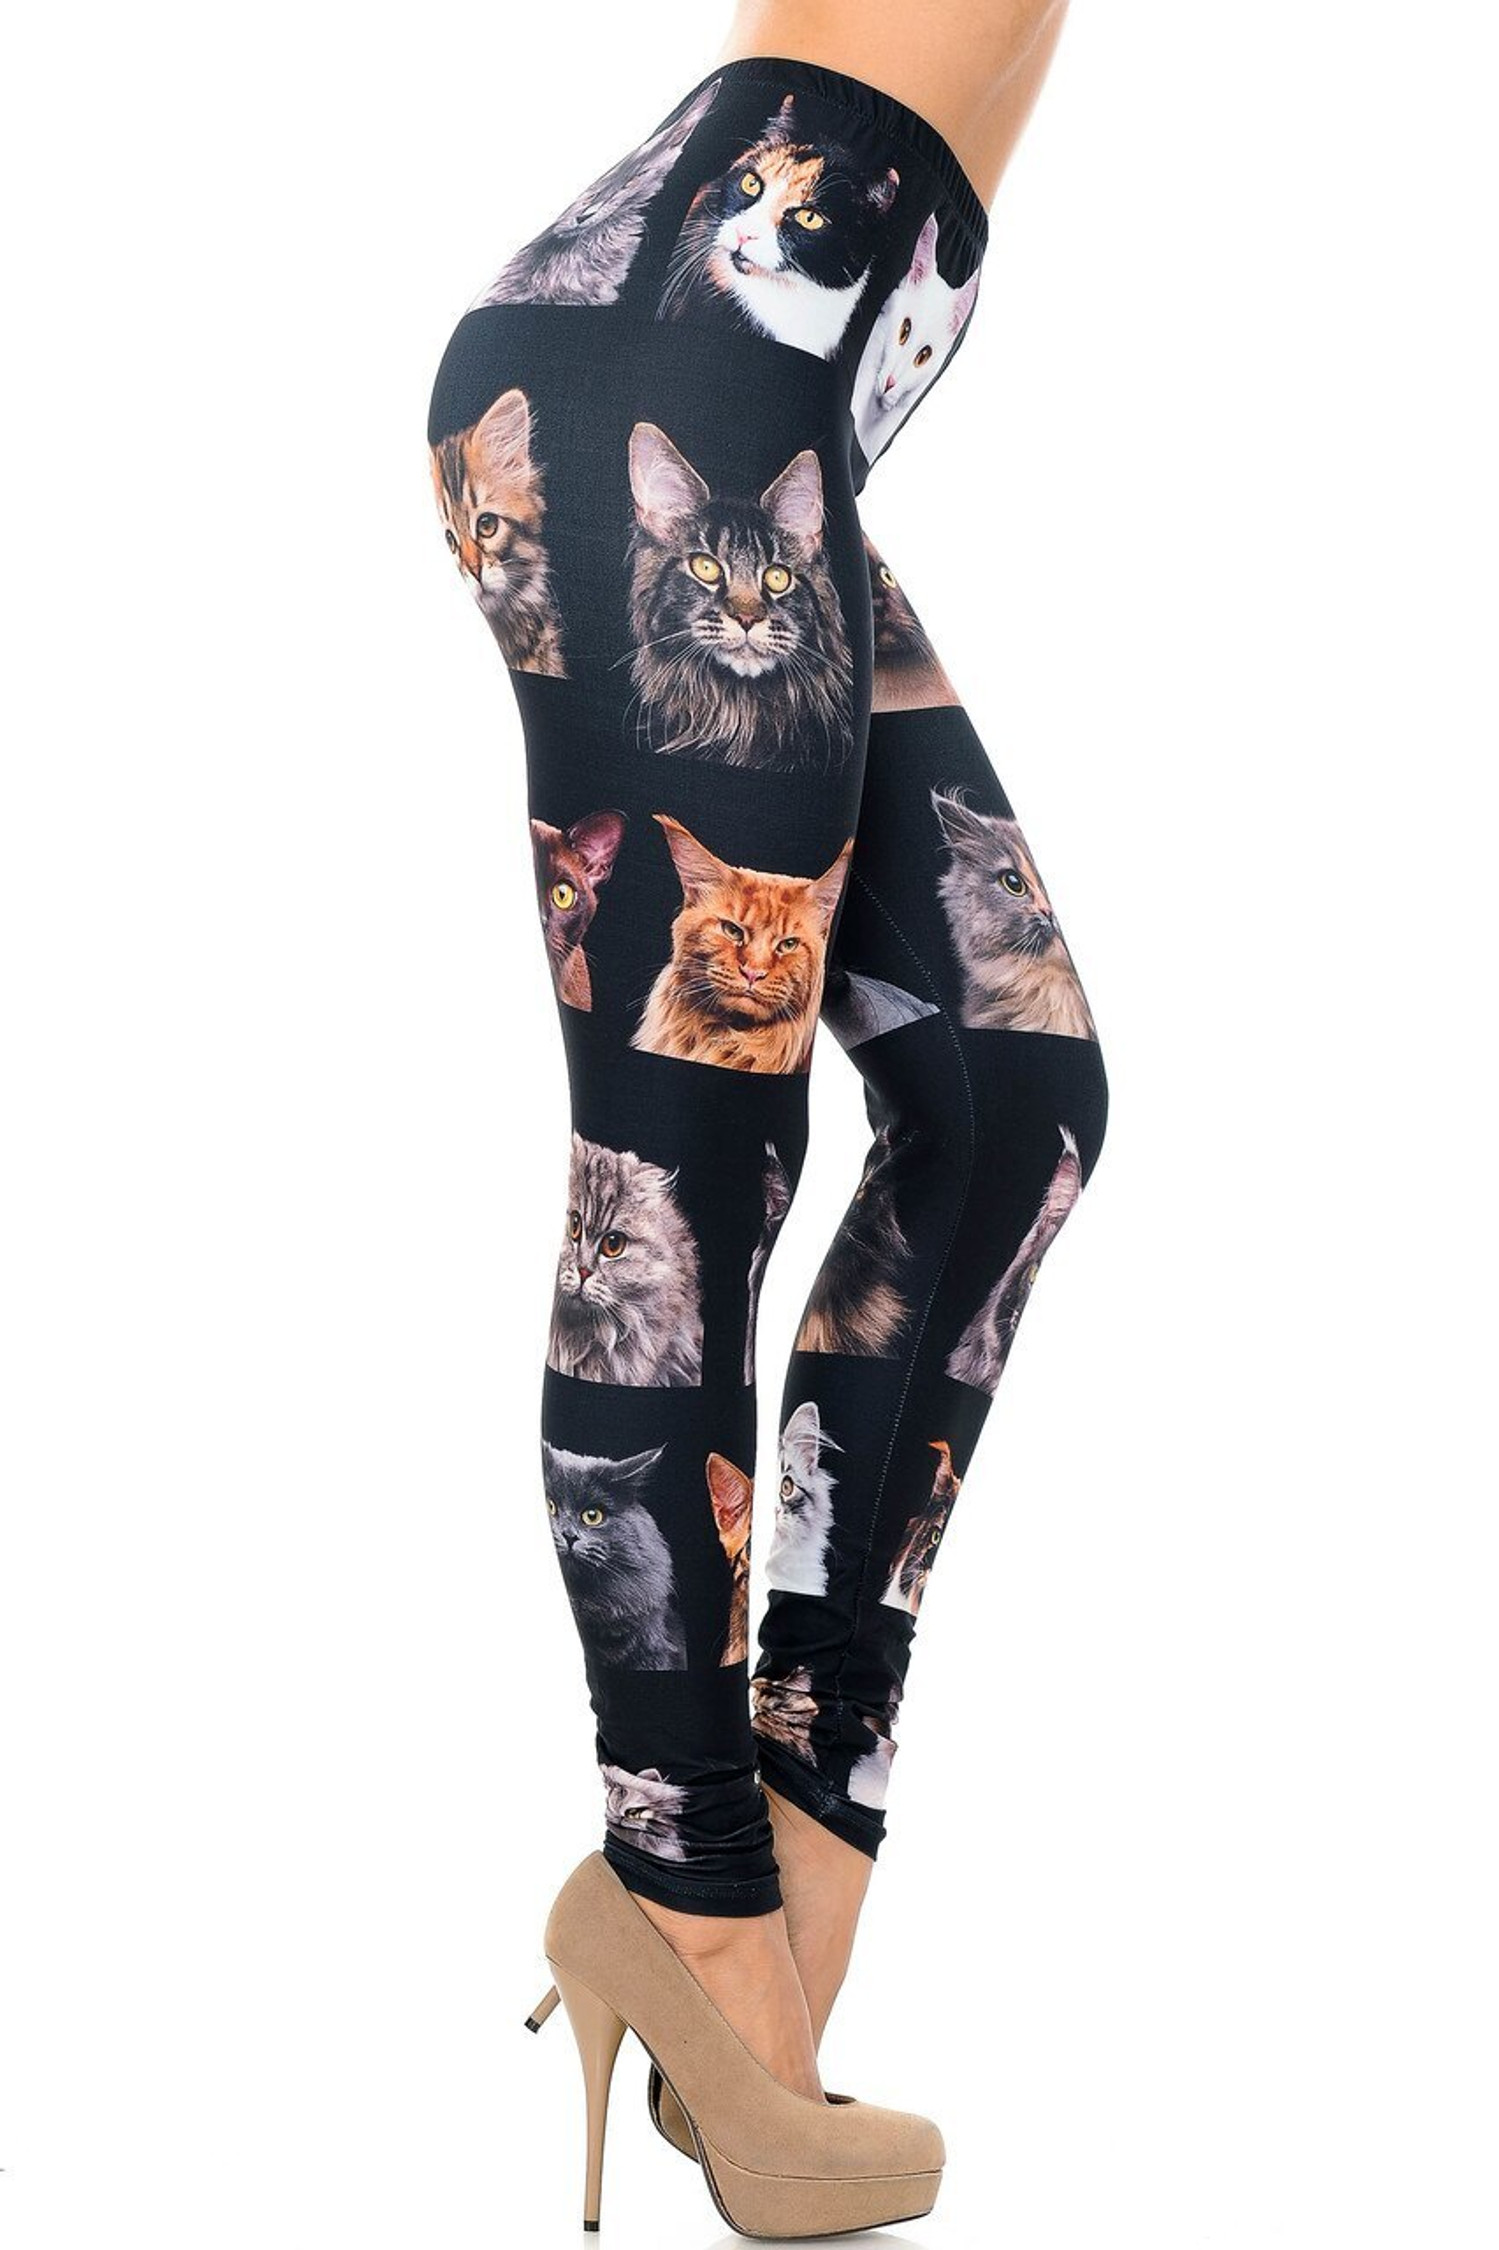 Rainbow Leopard Print Plus Size Leggings, Plus Size Clothing, Yoga Pants,  Extended Size Workout Pants, Super Plus, Cute Plus Fashion - Etsy